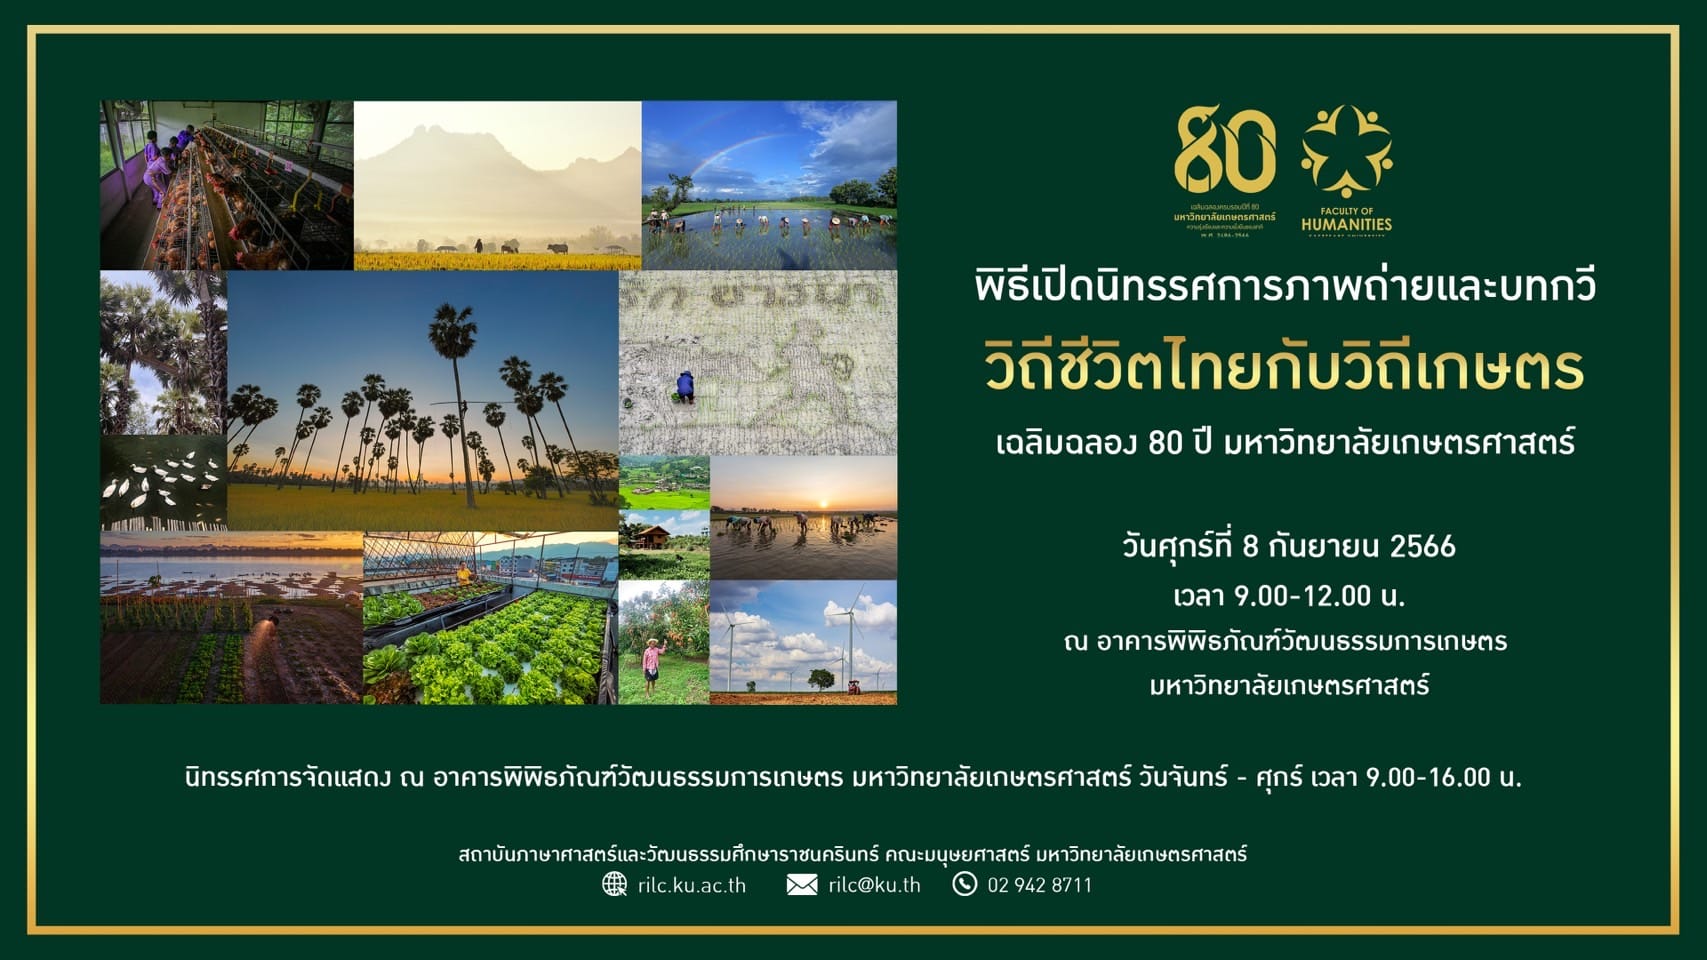 Featured image for “ขอเชิญเข้าร่วมพิธีเปิดนิทรรศการภาพถ่ายและบทกวี “วิถีชีวิตไทยกับวิถีเกษตร””